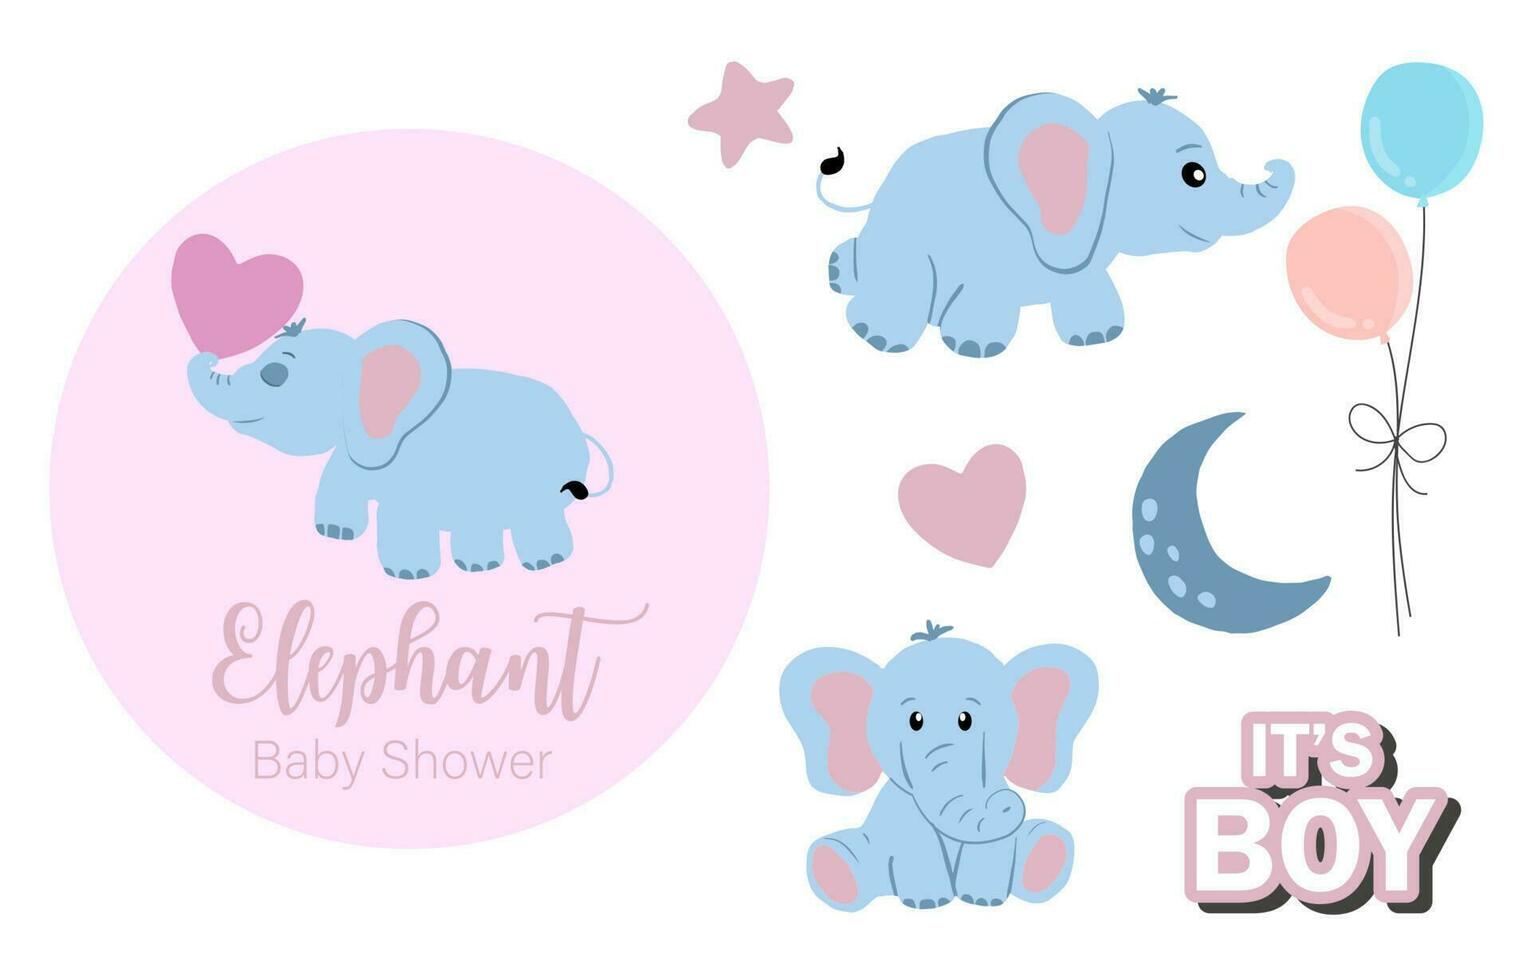 bambino elefante oggetto con stella, cuore, palloncino per compleanno cartolina vettore